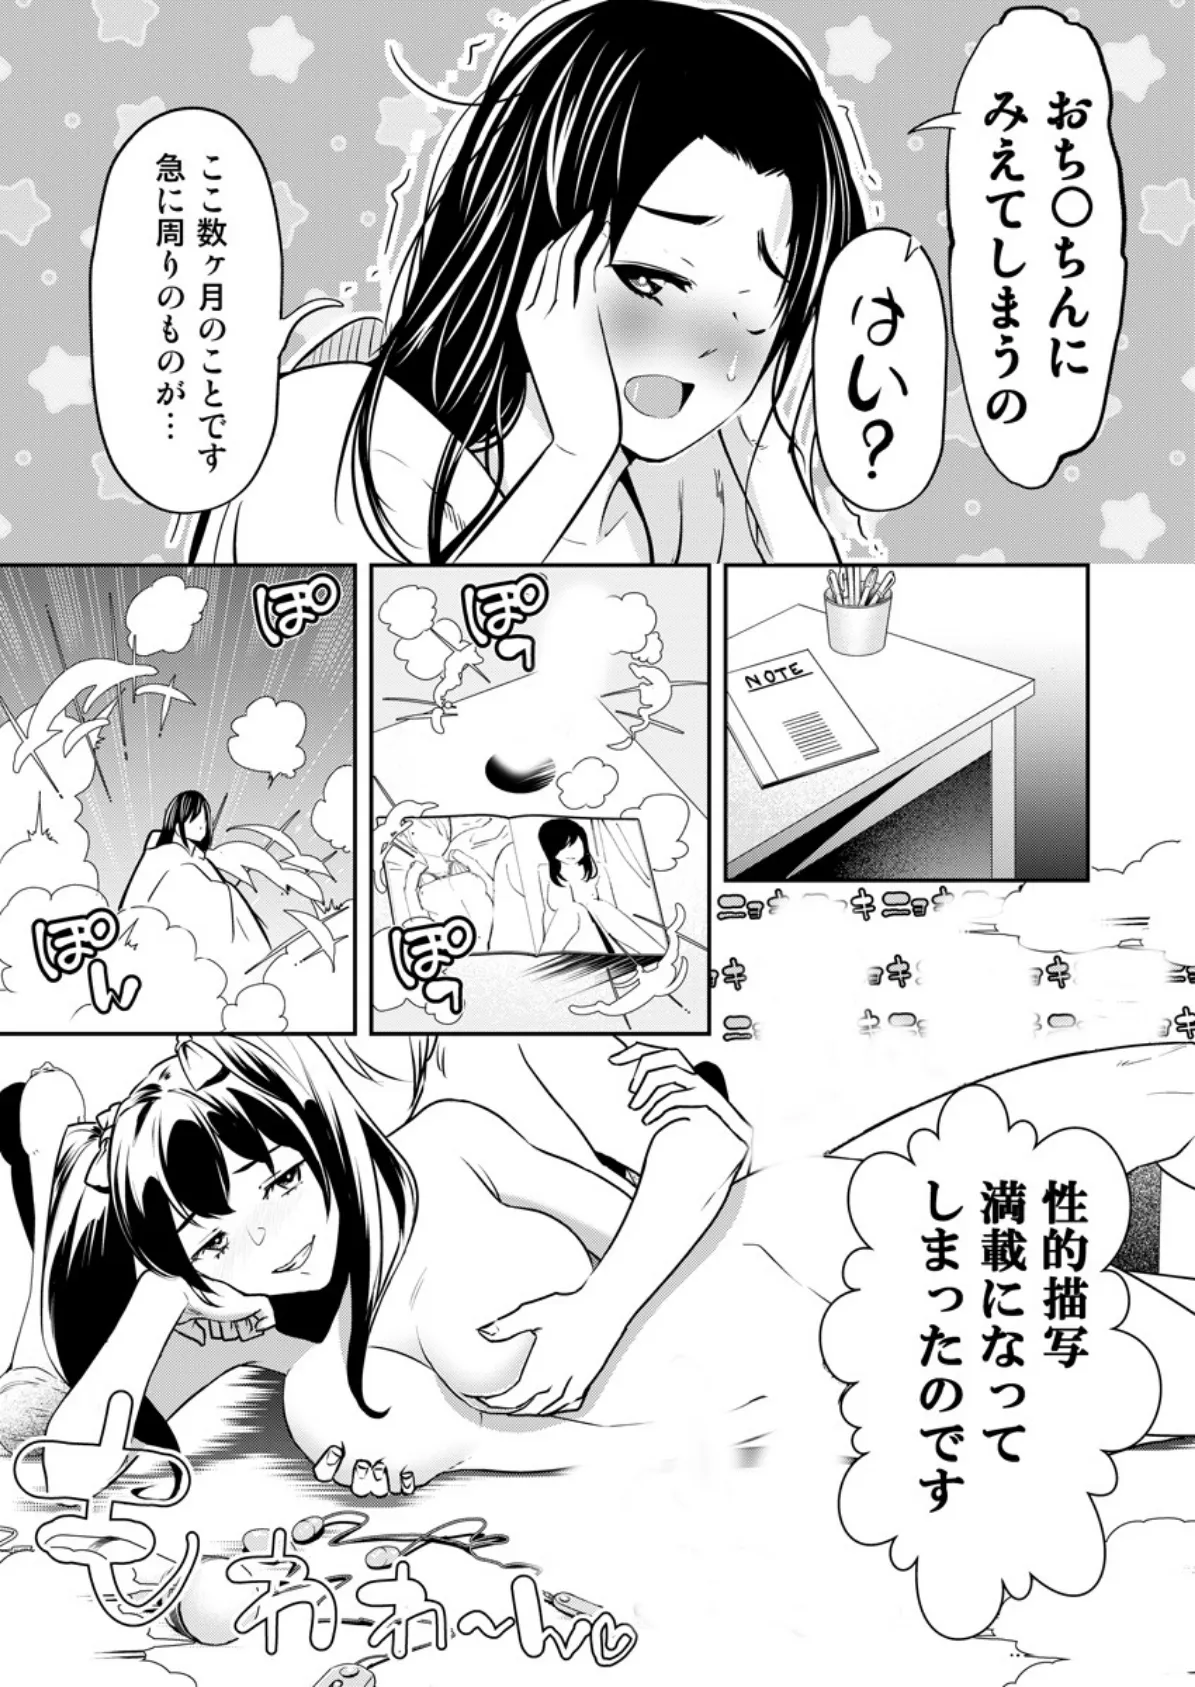 SEXダイヤル1919〜人妻の淫らなお悩み解決します〜 3 8ページ